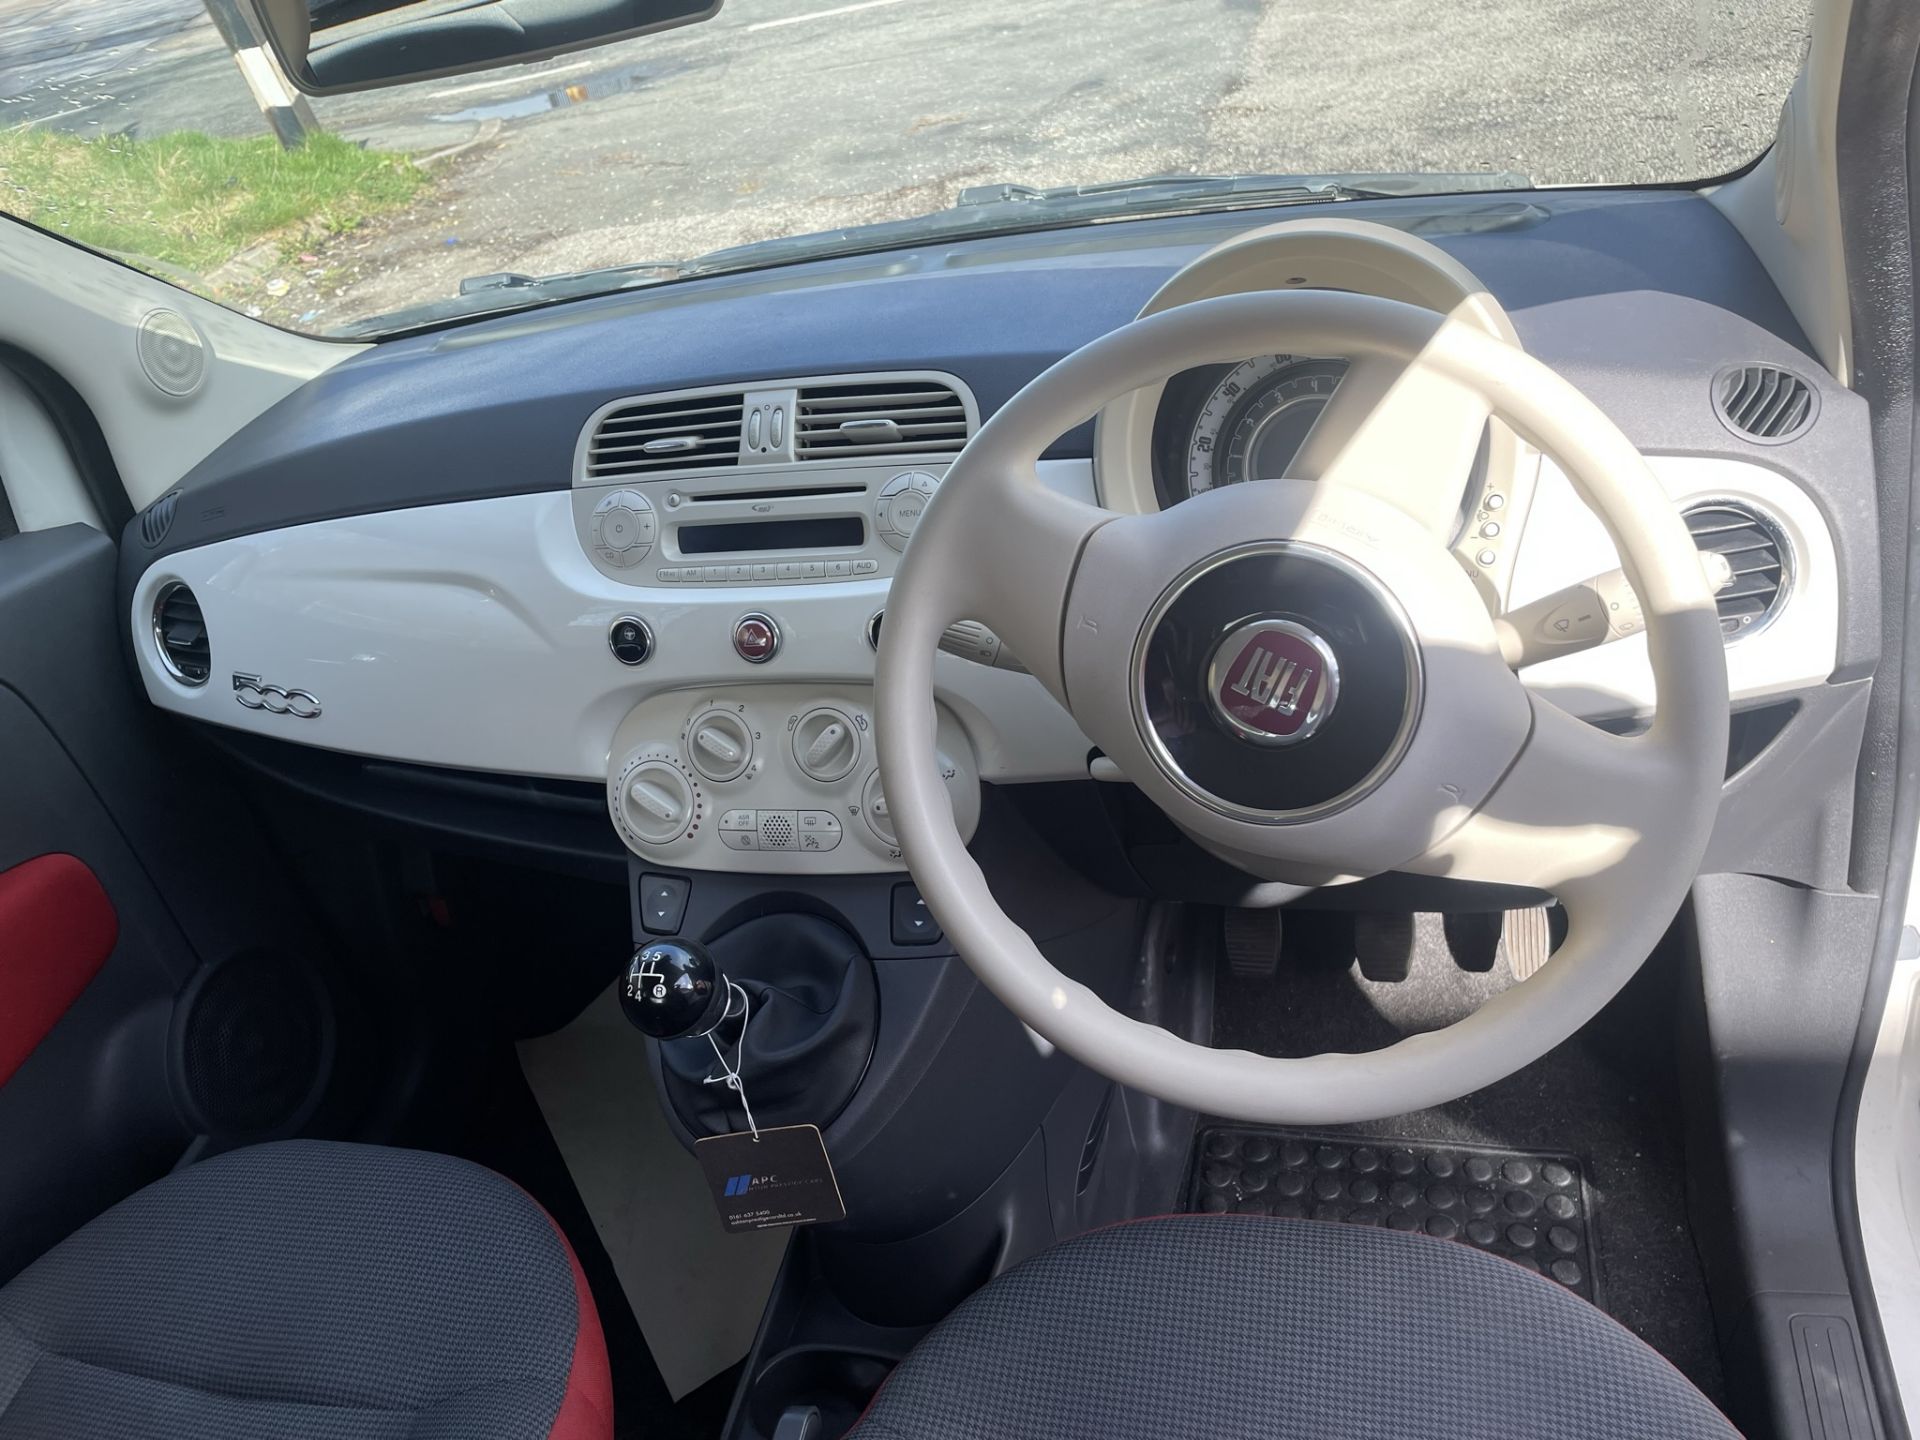 Fiat 500 POP 3 Door Hatchback | DU64 OWV | 76,122 Miles | zero VAT on hammer - Image 11 of 13